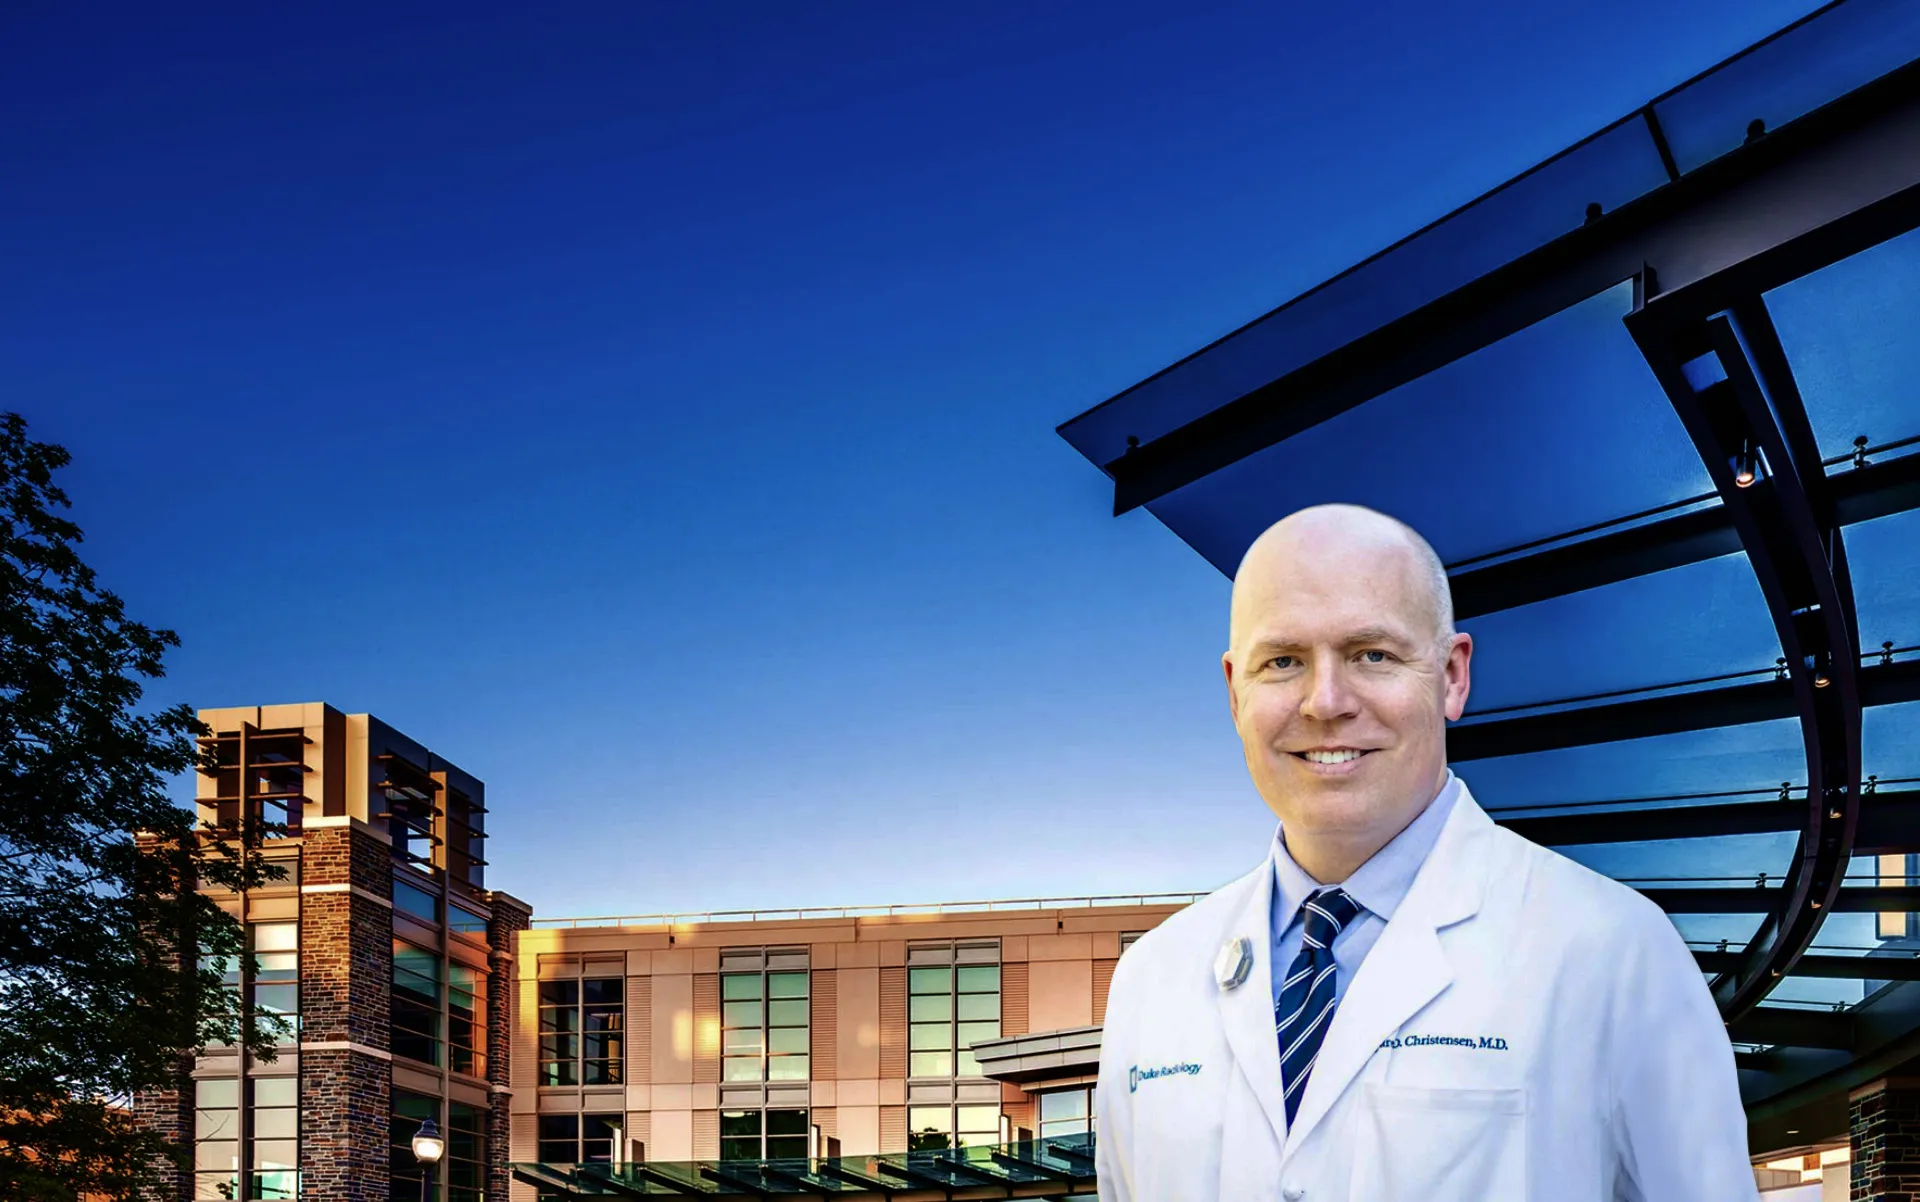 Dr. Jared Christensen standing in front of Duke University Medical Center